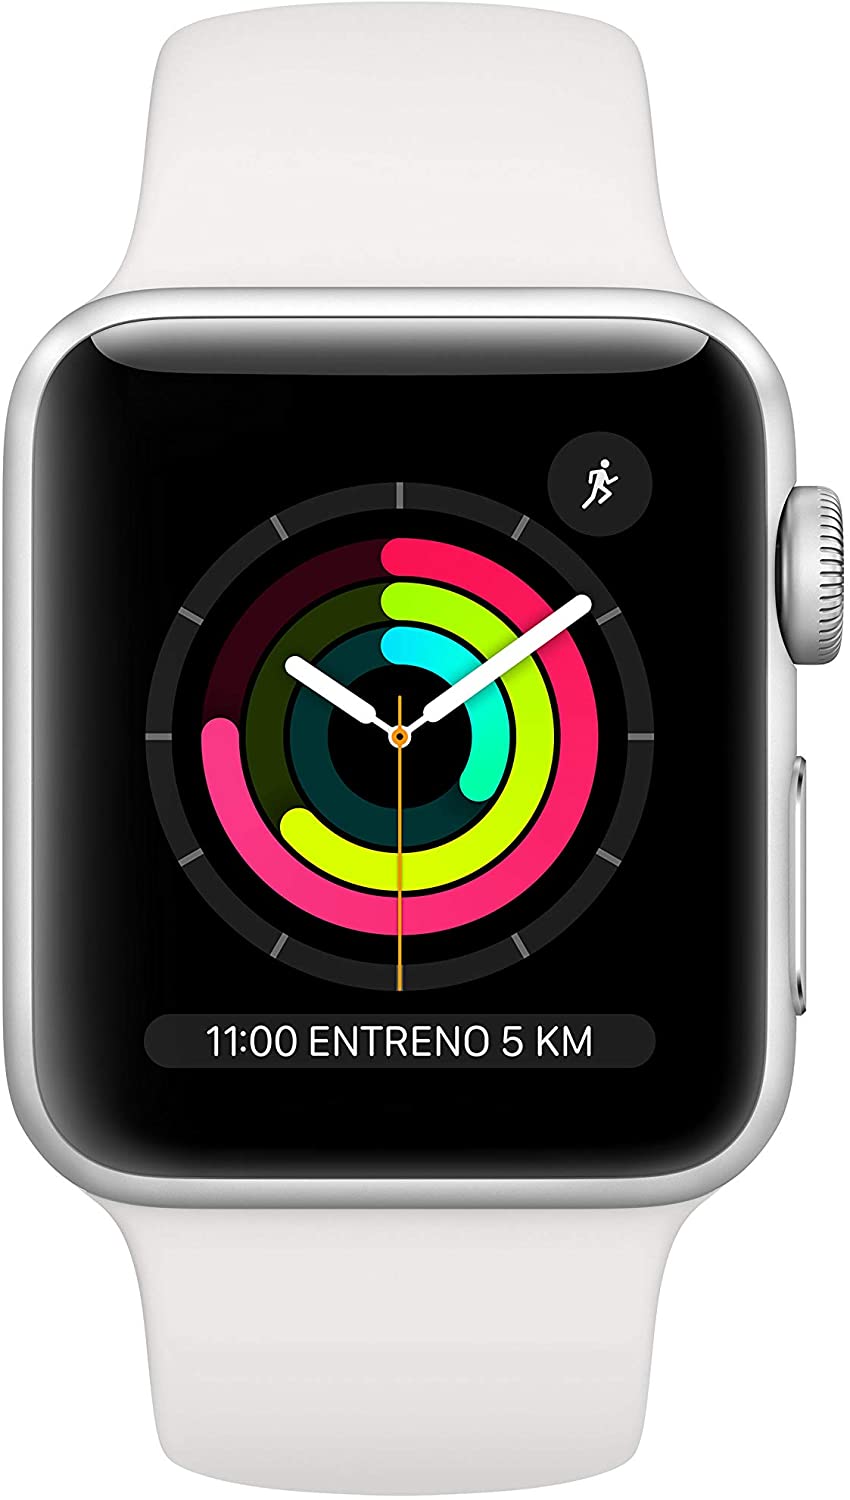 Prime Day: Apple Watch 3 al minimo storico, prezzi da 179 €